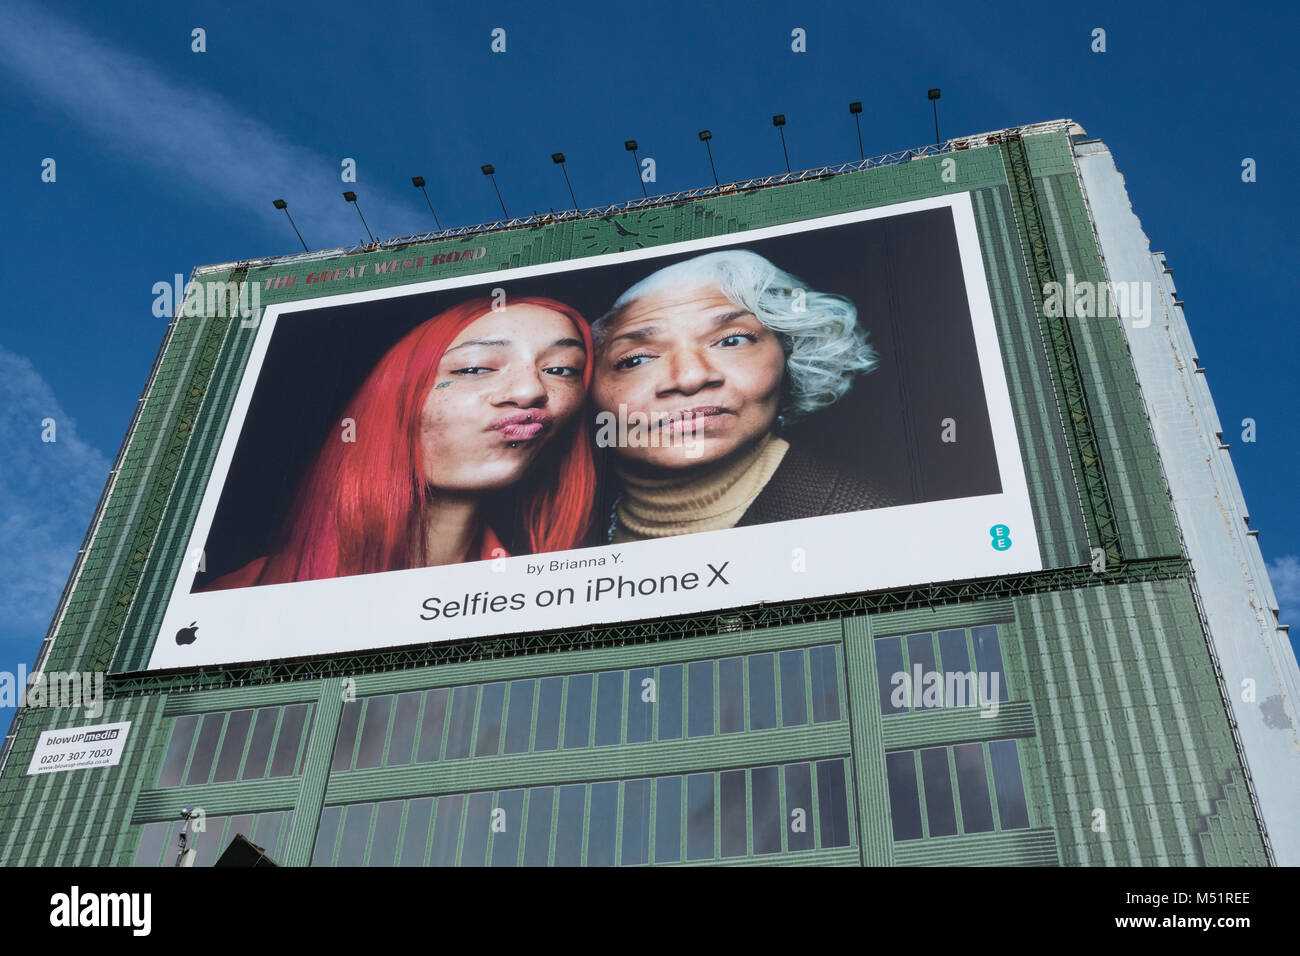 iPhone X selfies by Brianna Y - digital billboard in Brentford, West London, U.K. Stock Photo